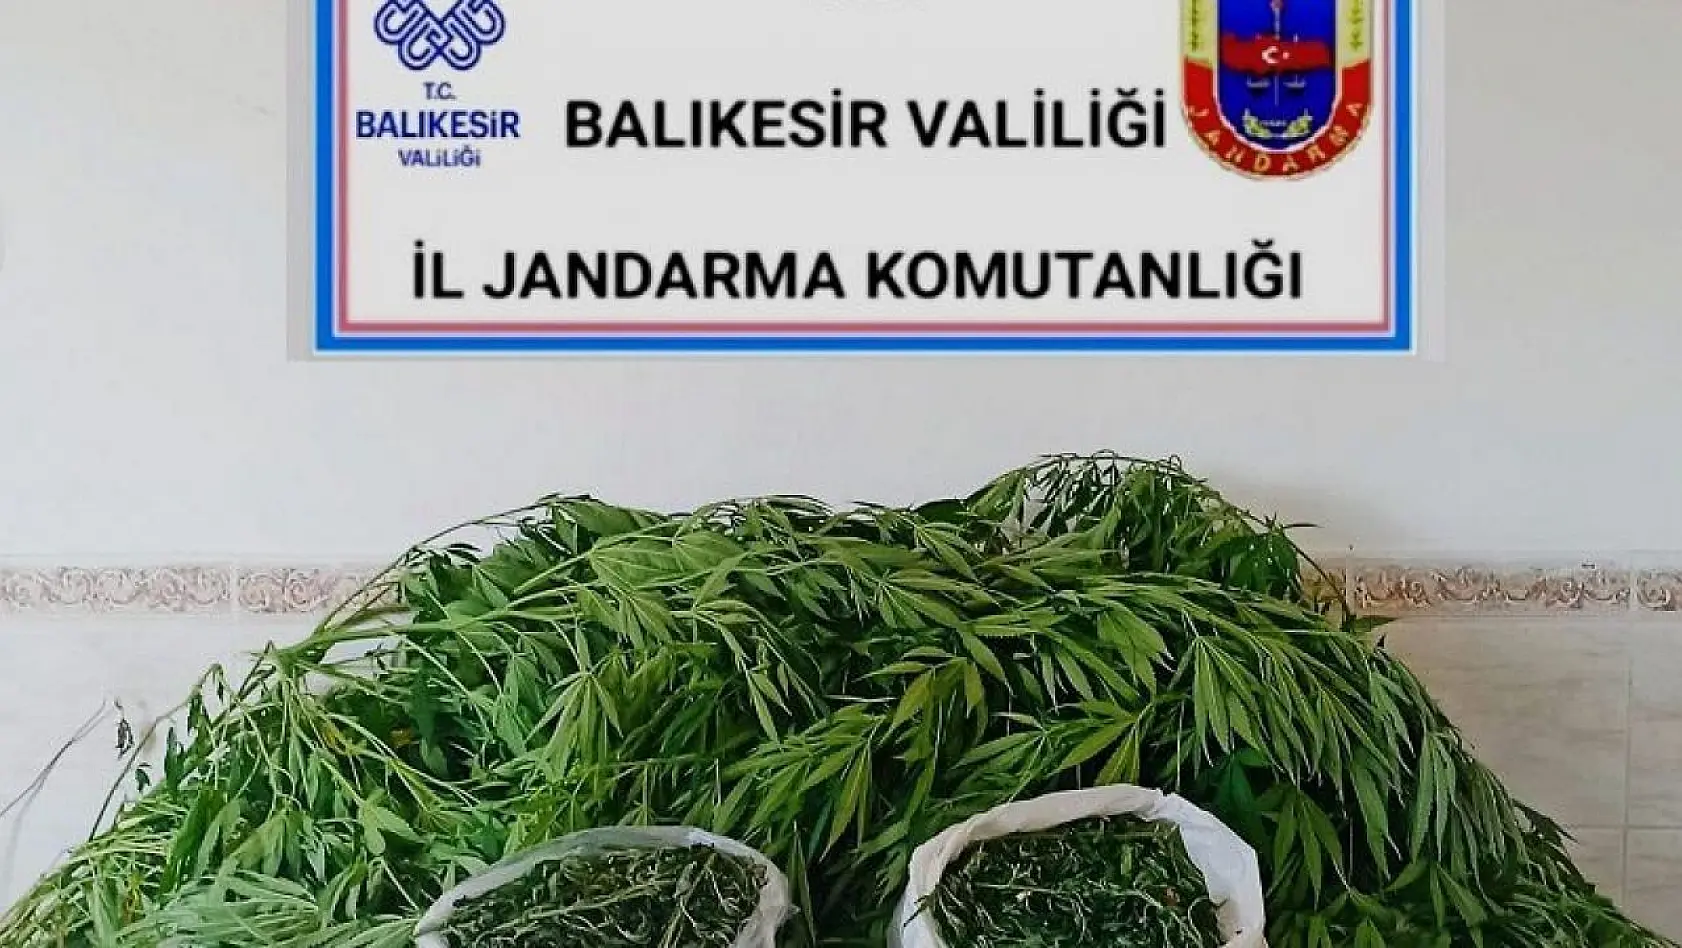 Bandırma'da uyuşturucu operasyonu: 1 kilogram uyuşturucu madde ele geçirildi